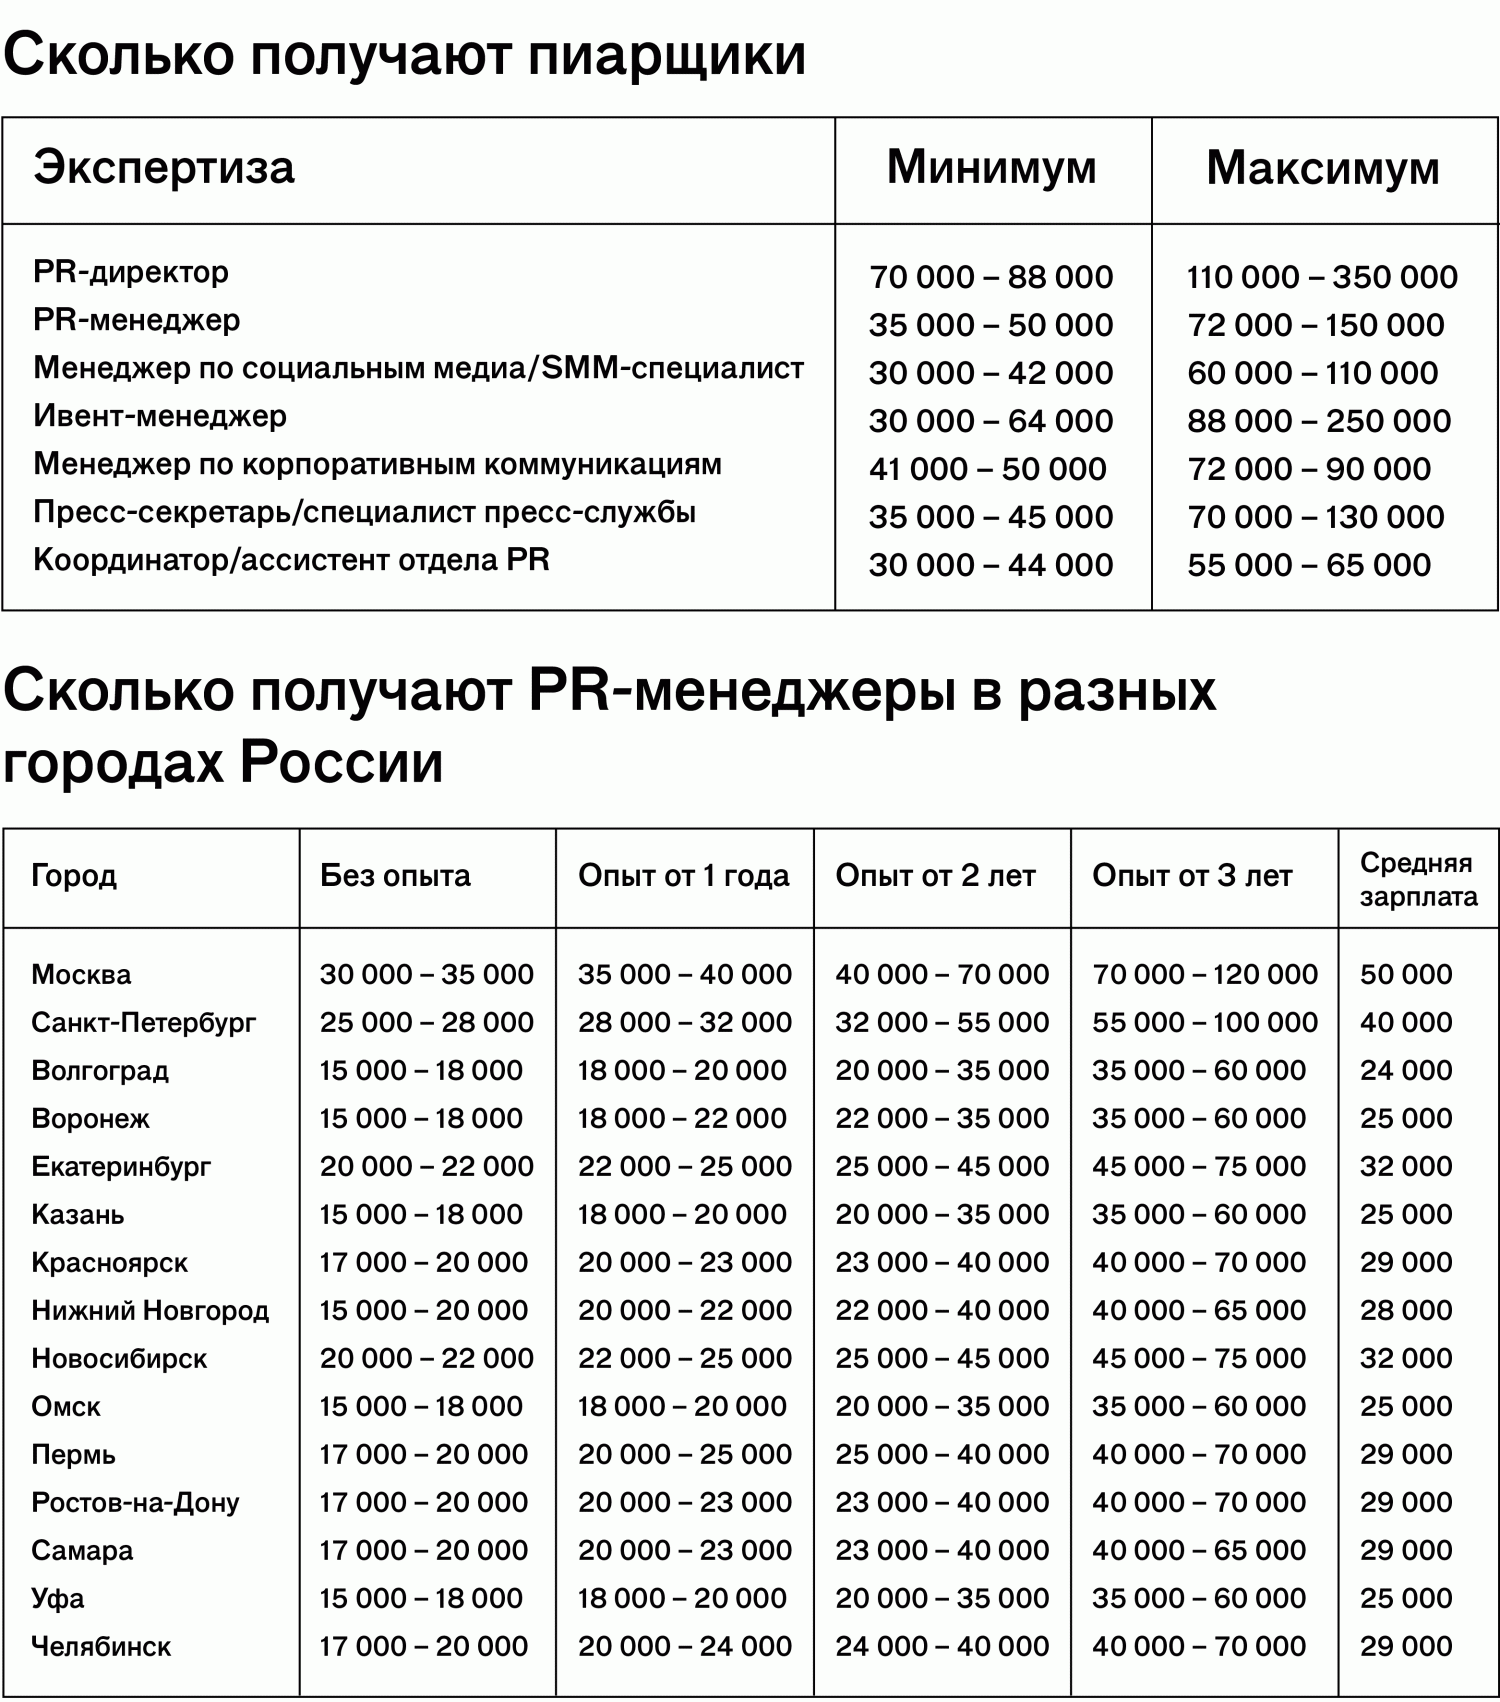 Сколько получают российские SMM-специалисты и PR-менеджеры?